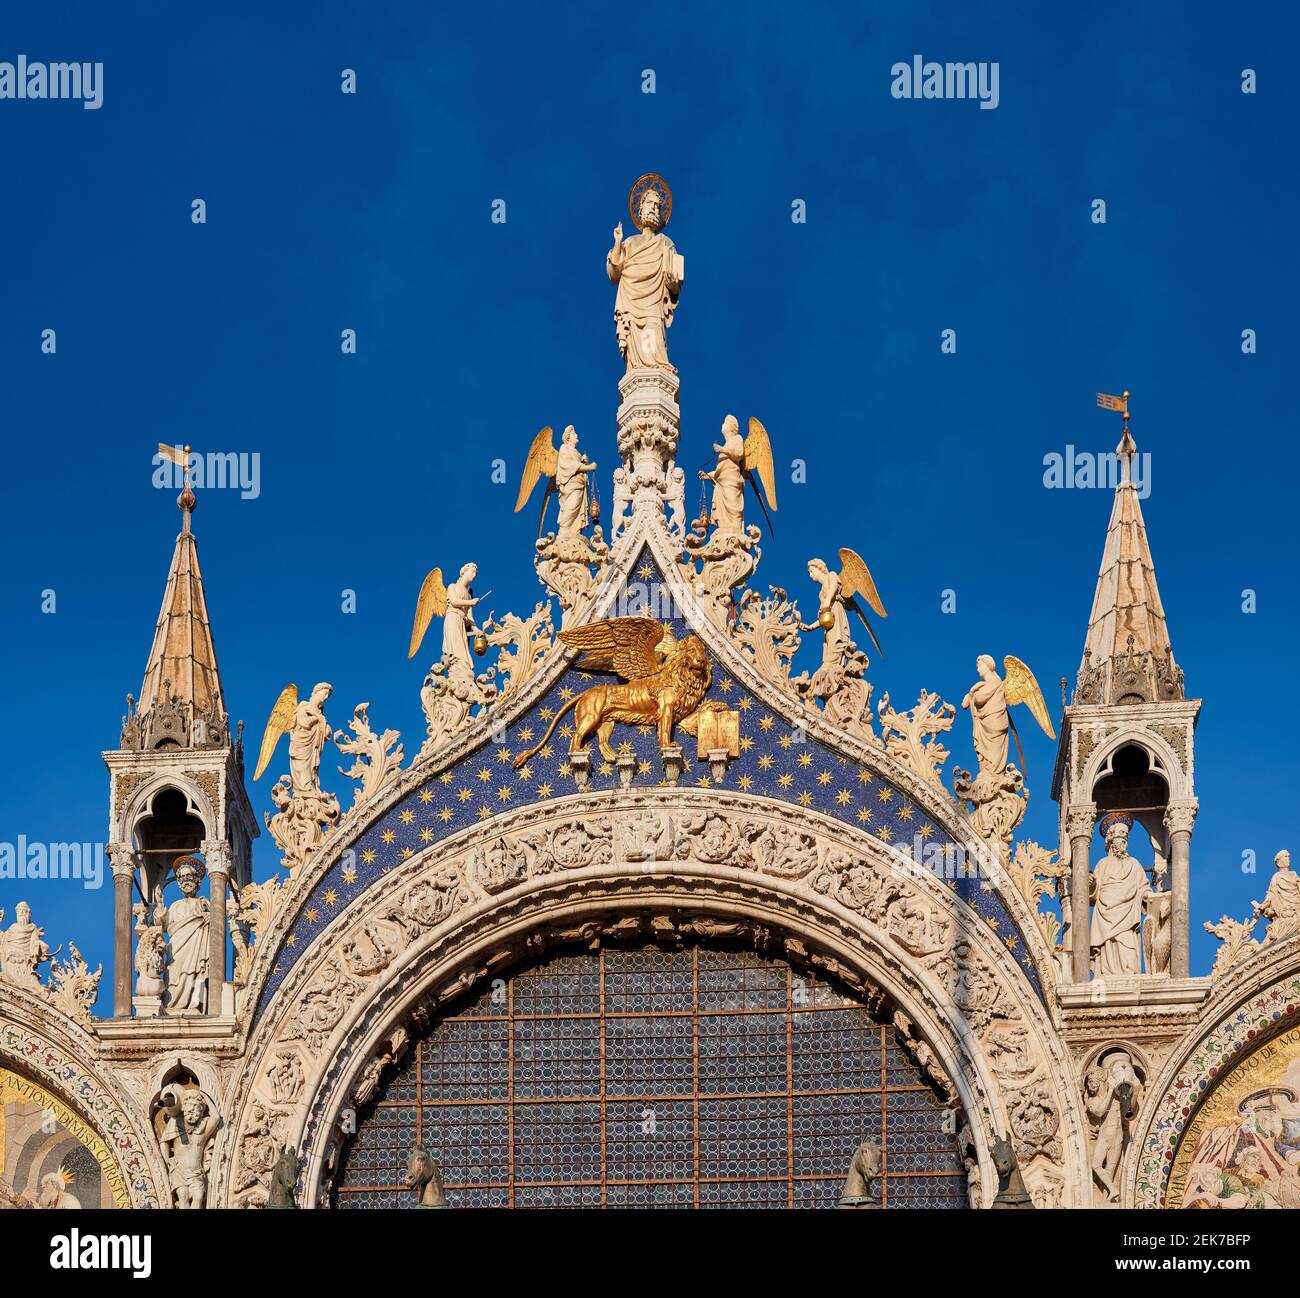 Detalle de la fachada de la Basílica de San Marcos o Basílica de San Marcos, Venecia, Veneto, ITA Foto de stock